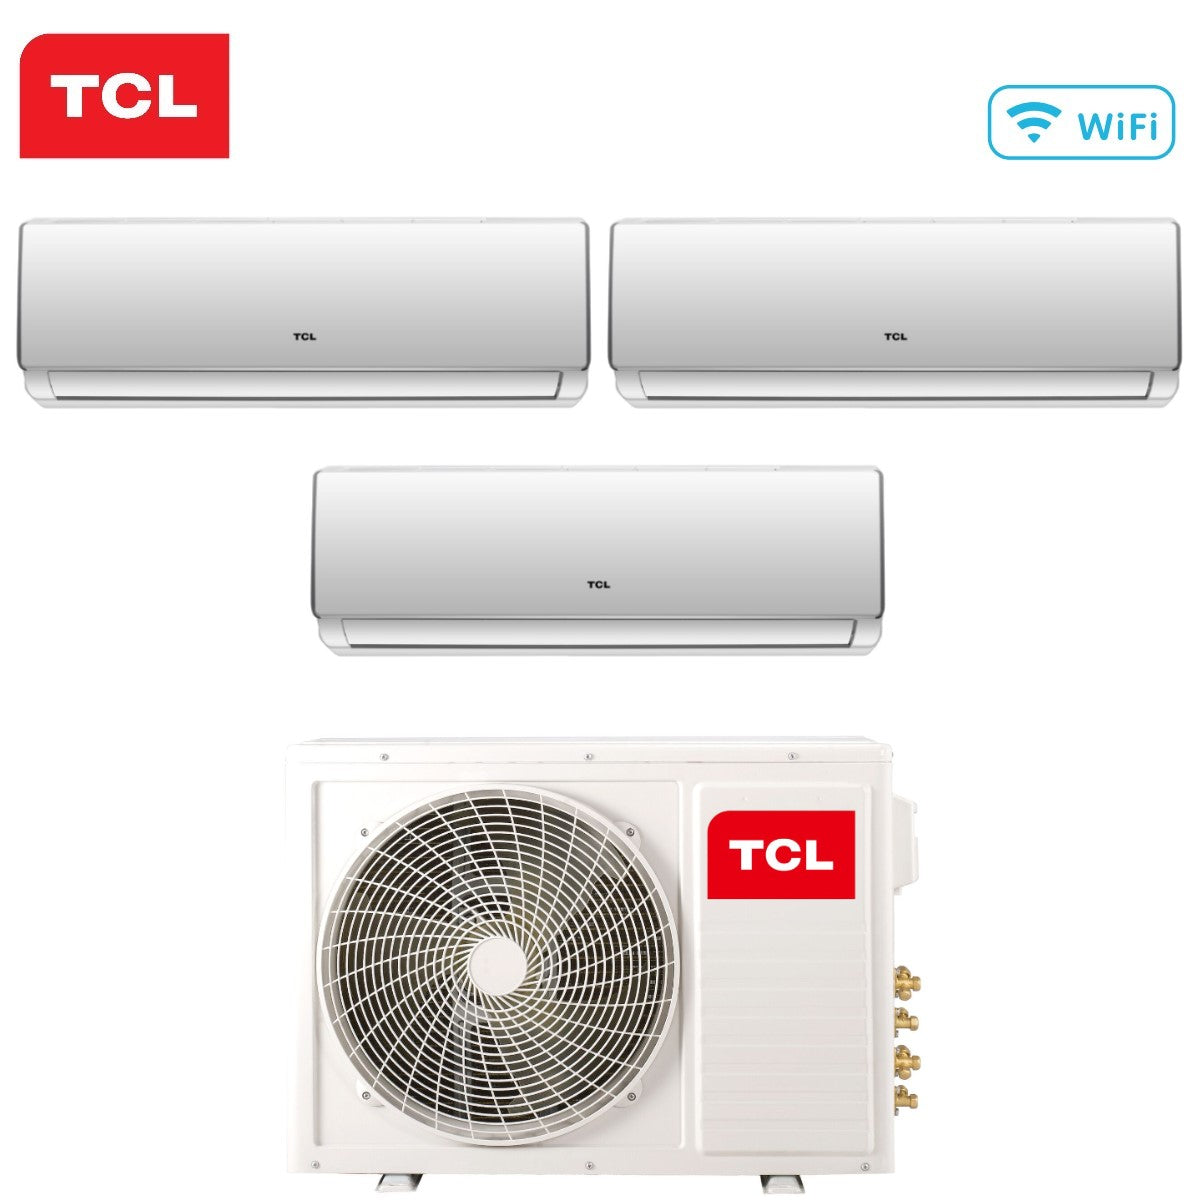 immagine-2-tcl-climatizzatore-condizionatore-tcl-trial-split-inverter-serie-elite-f2-999-con-mt2730-r-32-wi-fi-integrato-900090009000